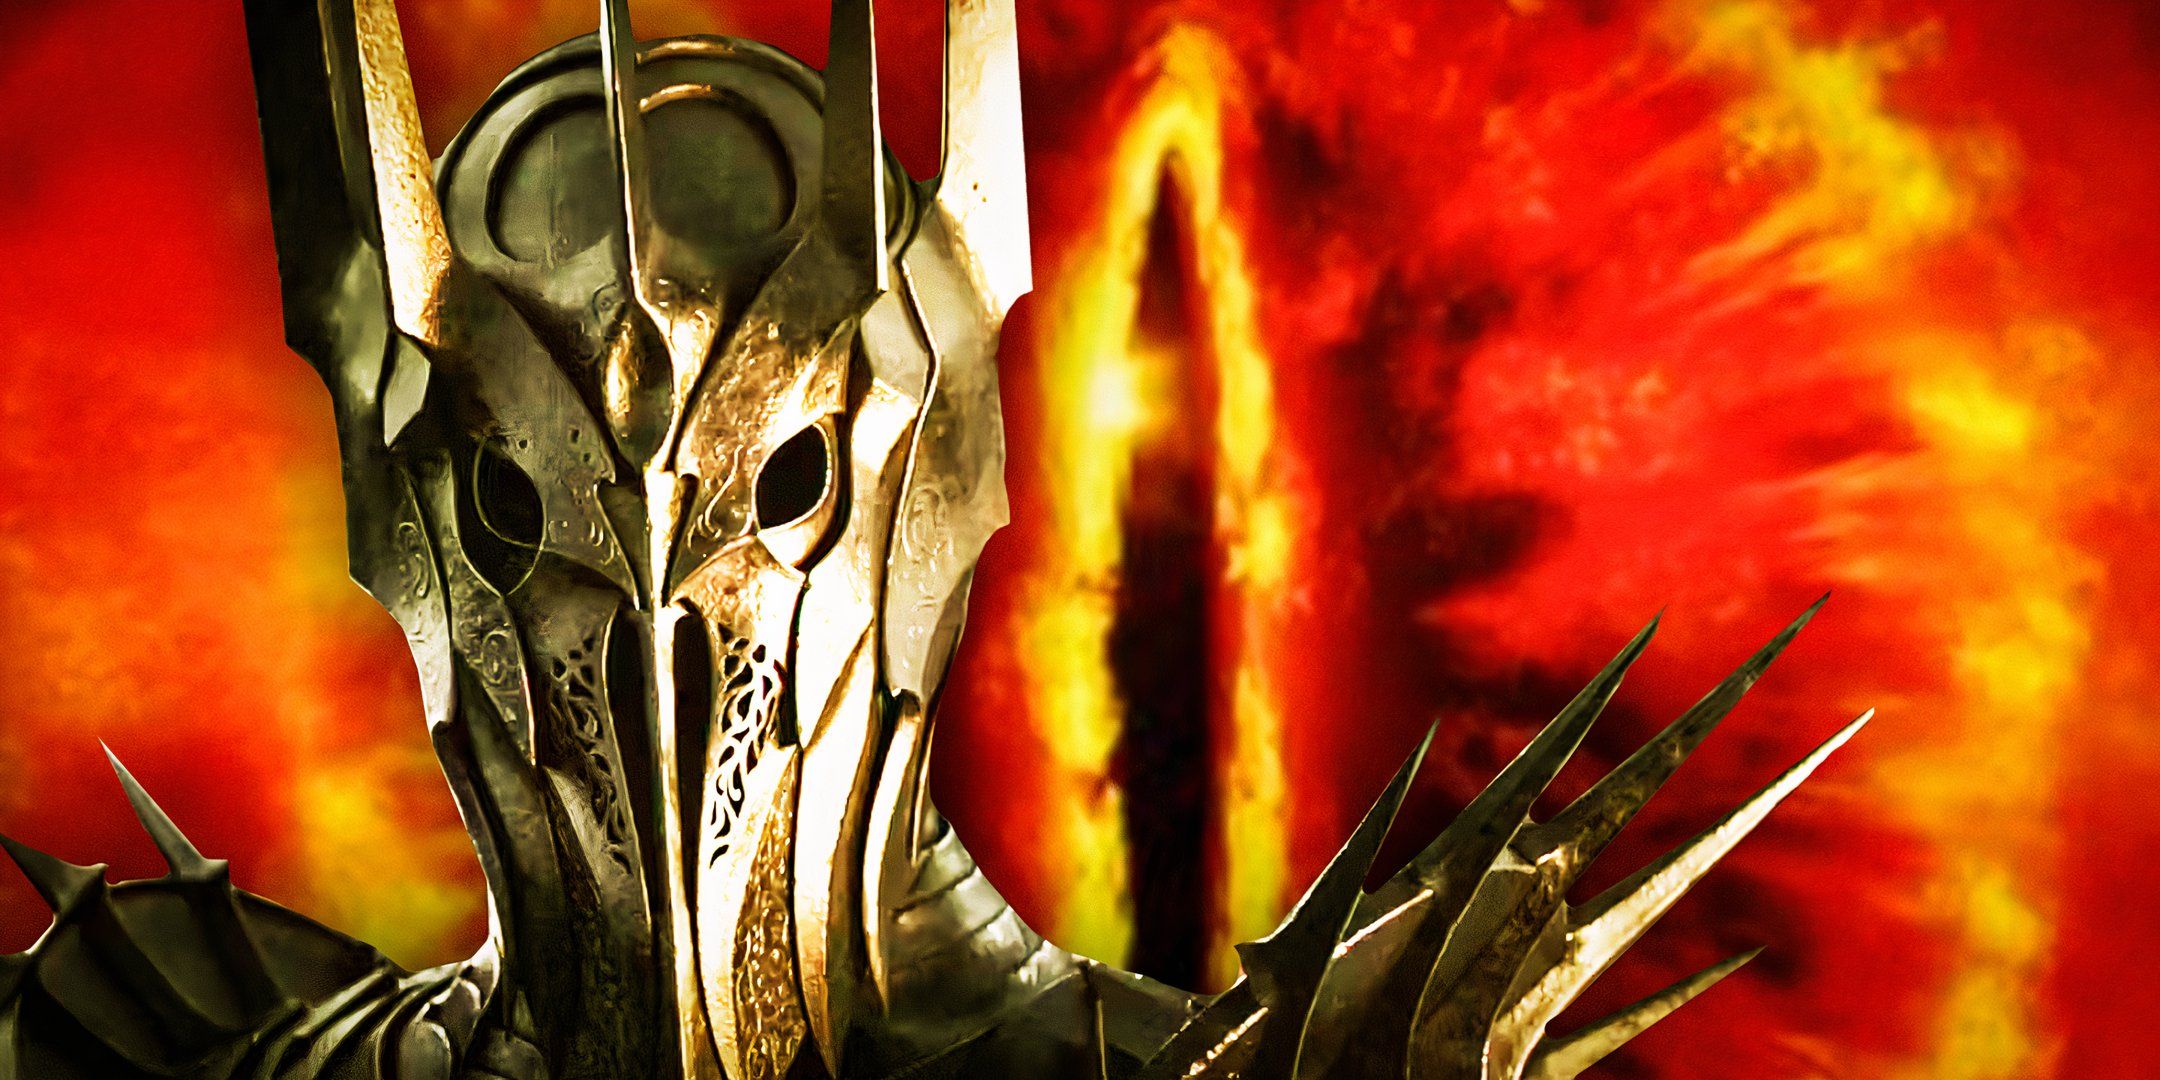 La nueva película El señor de los anillos responderá a sus preguntas más importantes sobre cómo se ve realmente Sauron